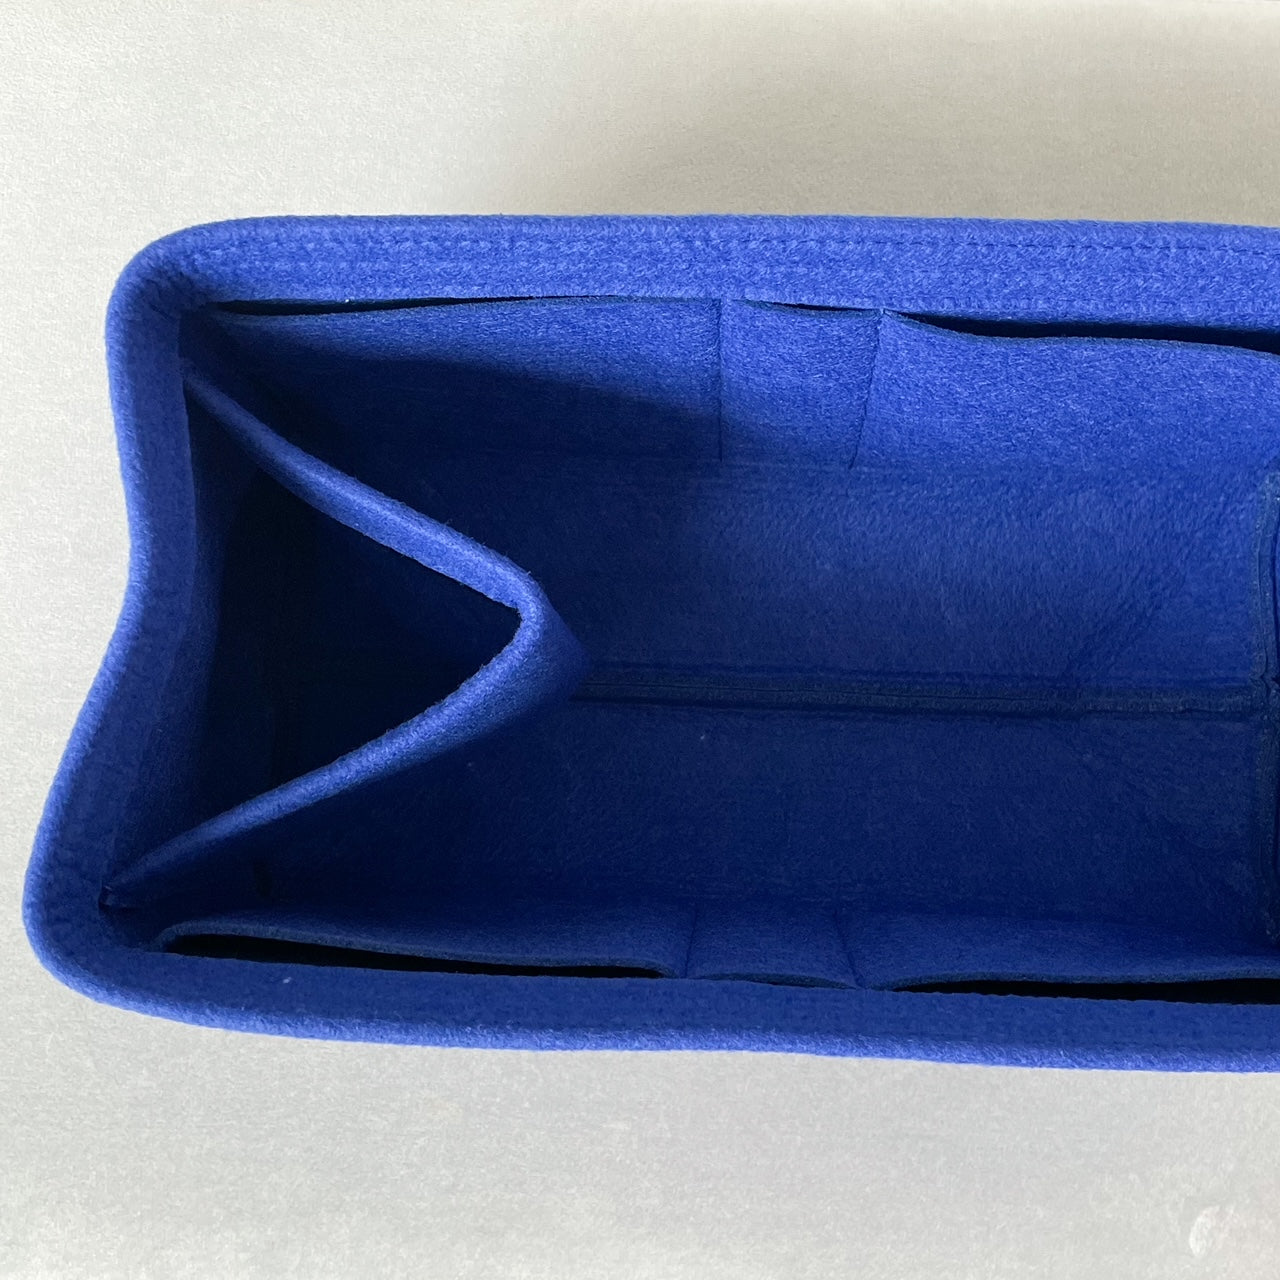 Birkin Bag Caddy in Blue Electric